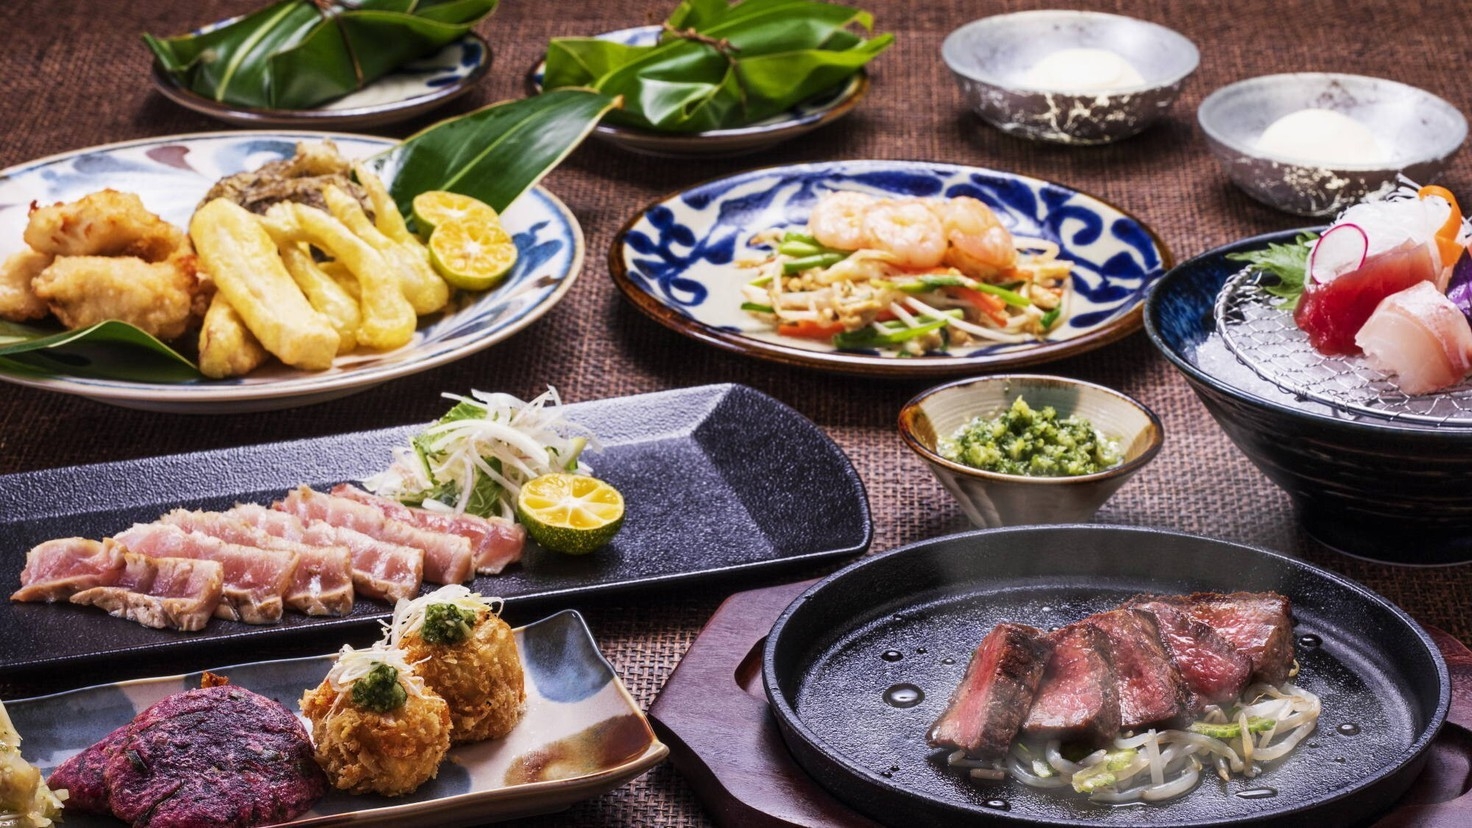 【楽天スーパーSALE】10％OFF〜琉球炭火料理店「うむさんの庭」で愉しむ宴会プラン（松）